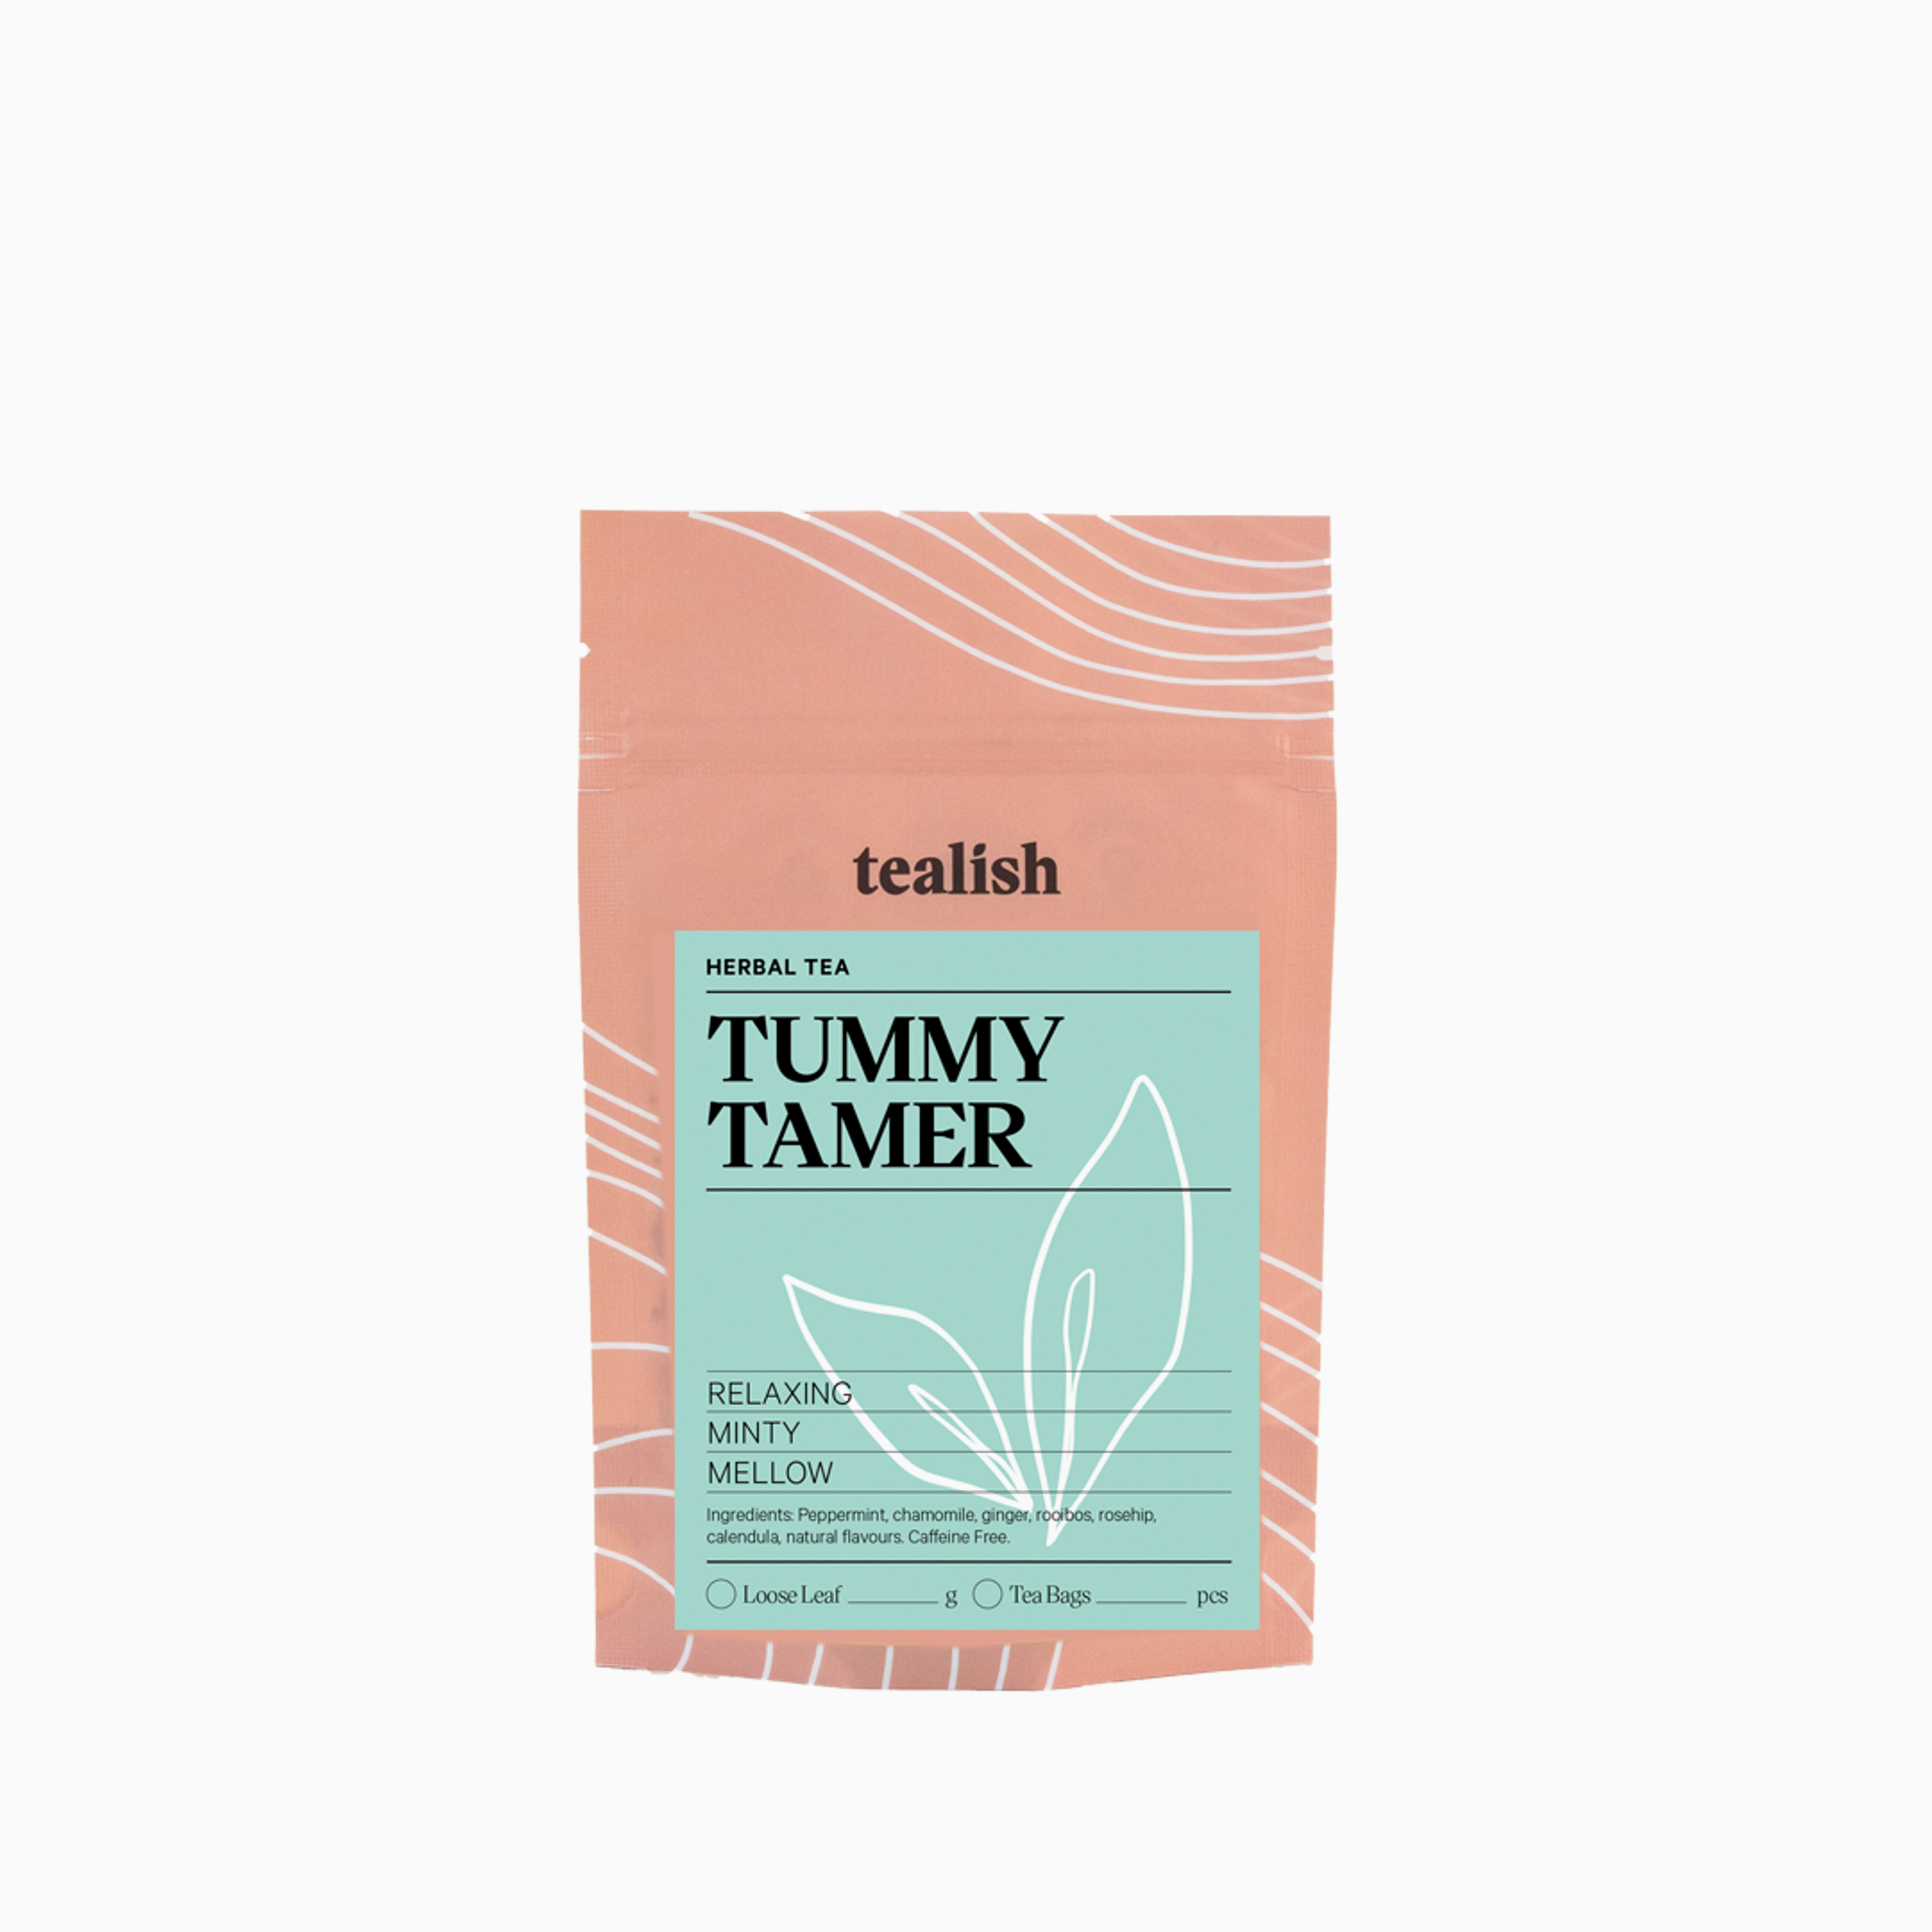 Tummy Tamer